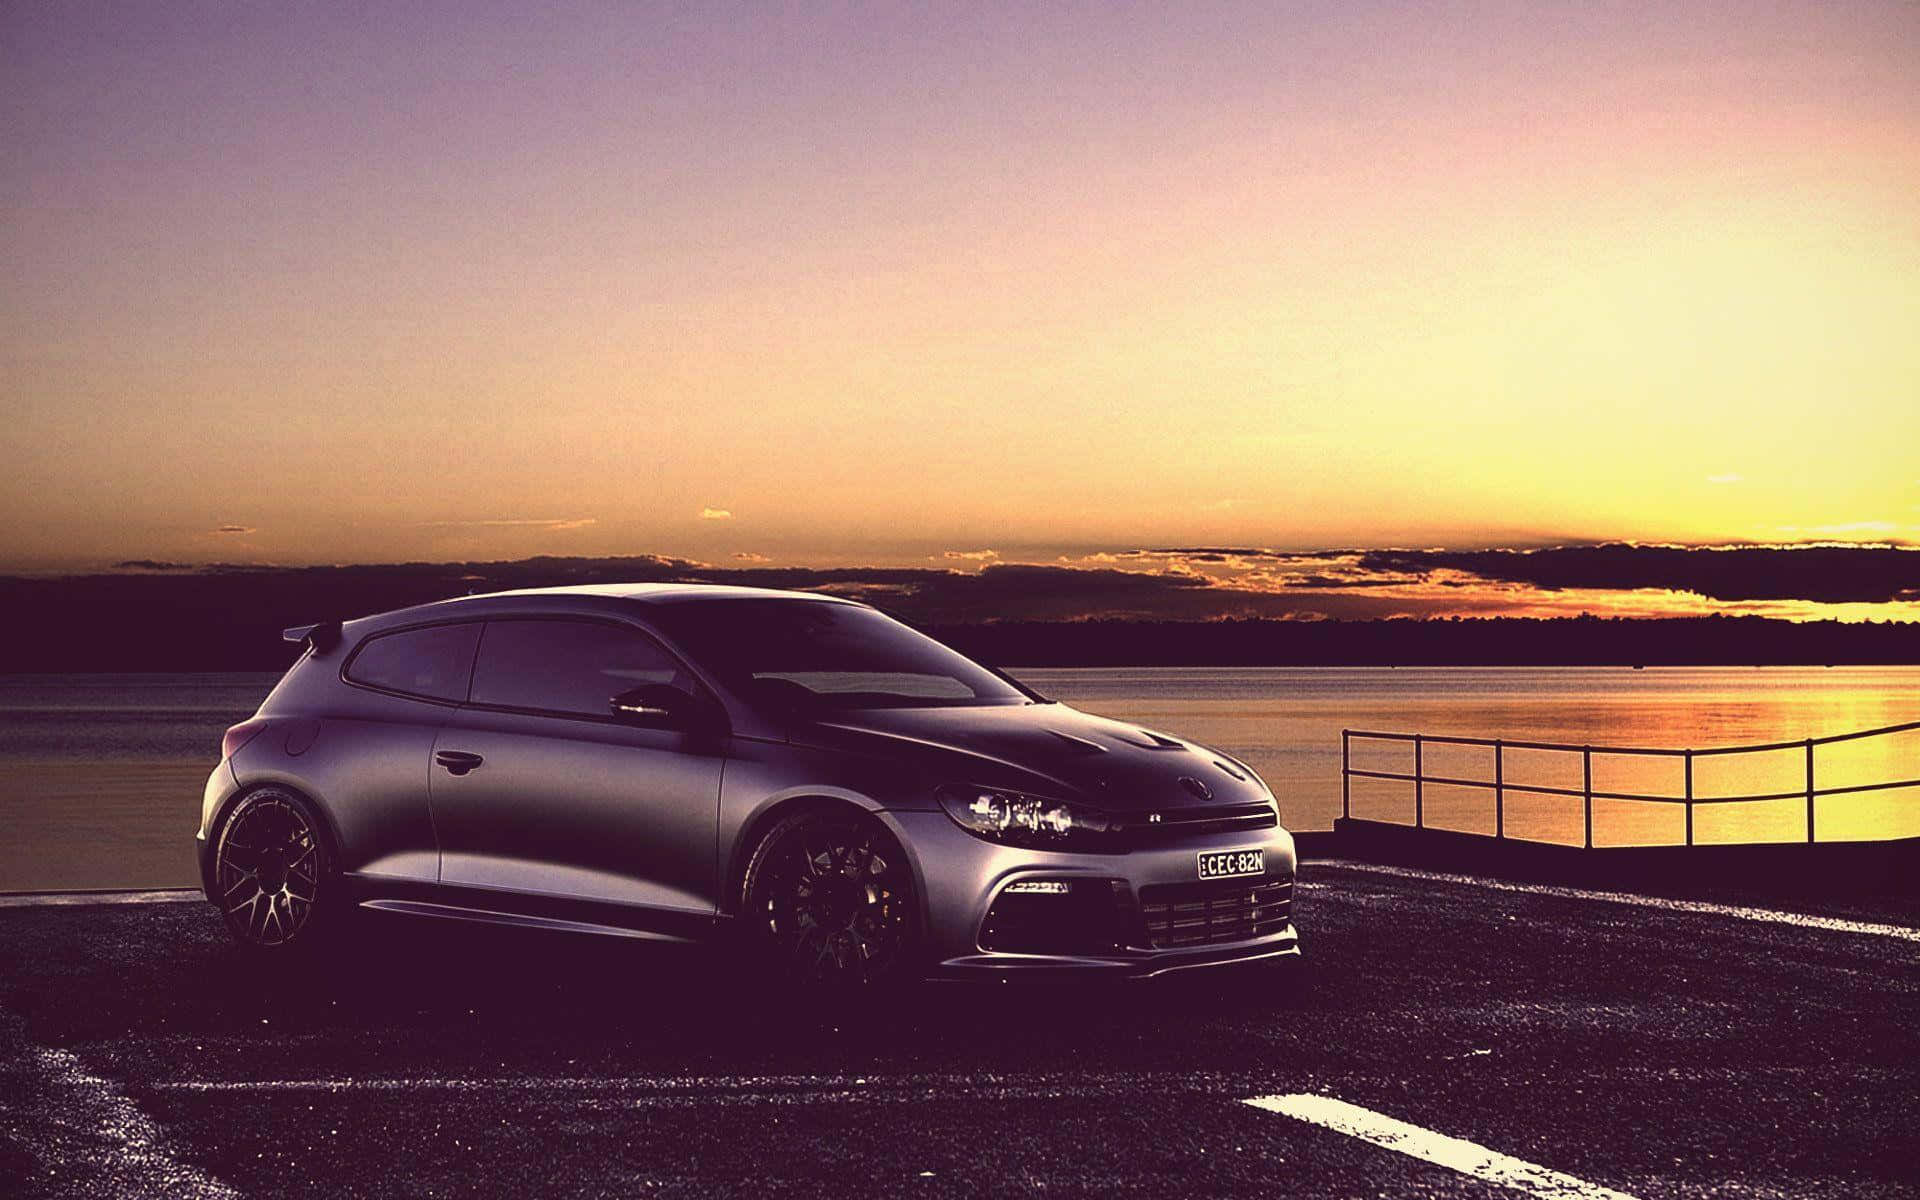 Sleek Volkswagen Scirocco Showcasing Speed And Elegance Wallpaper